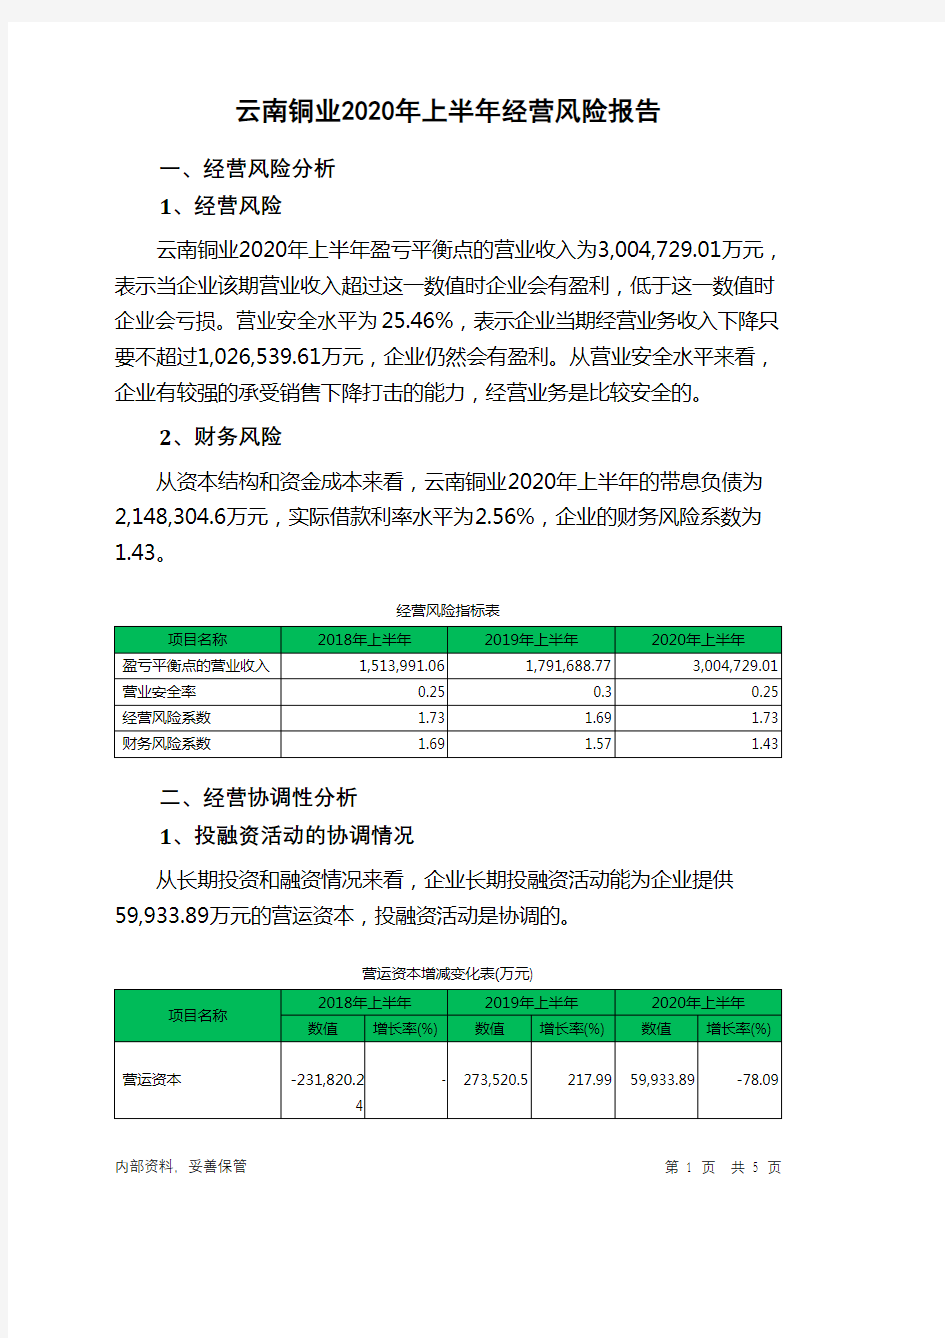 云南铜业2020年上半年经营风险报告